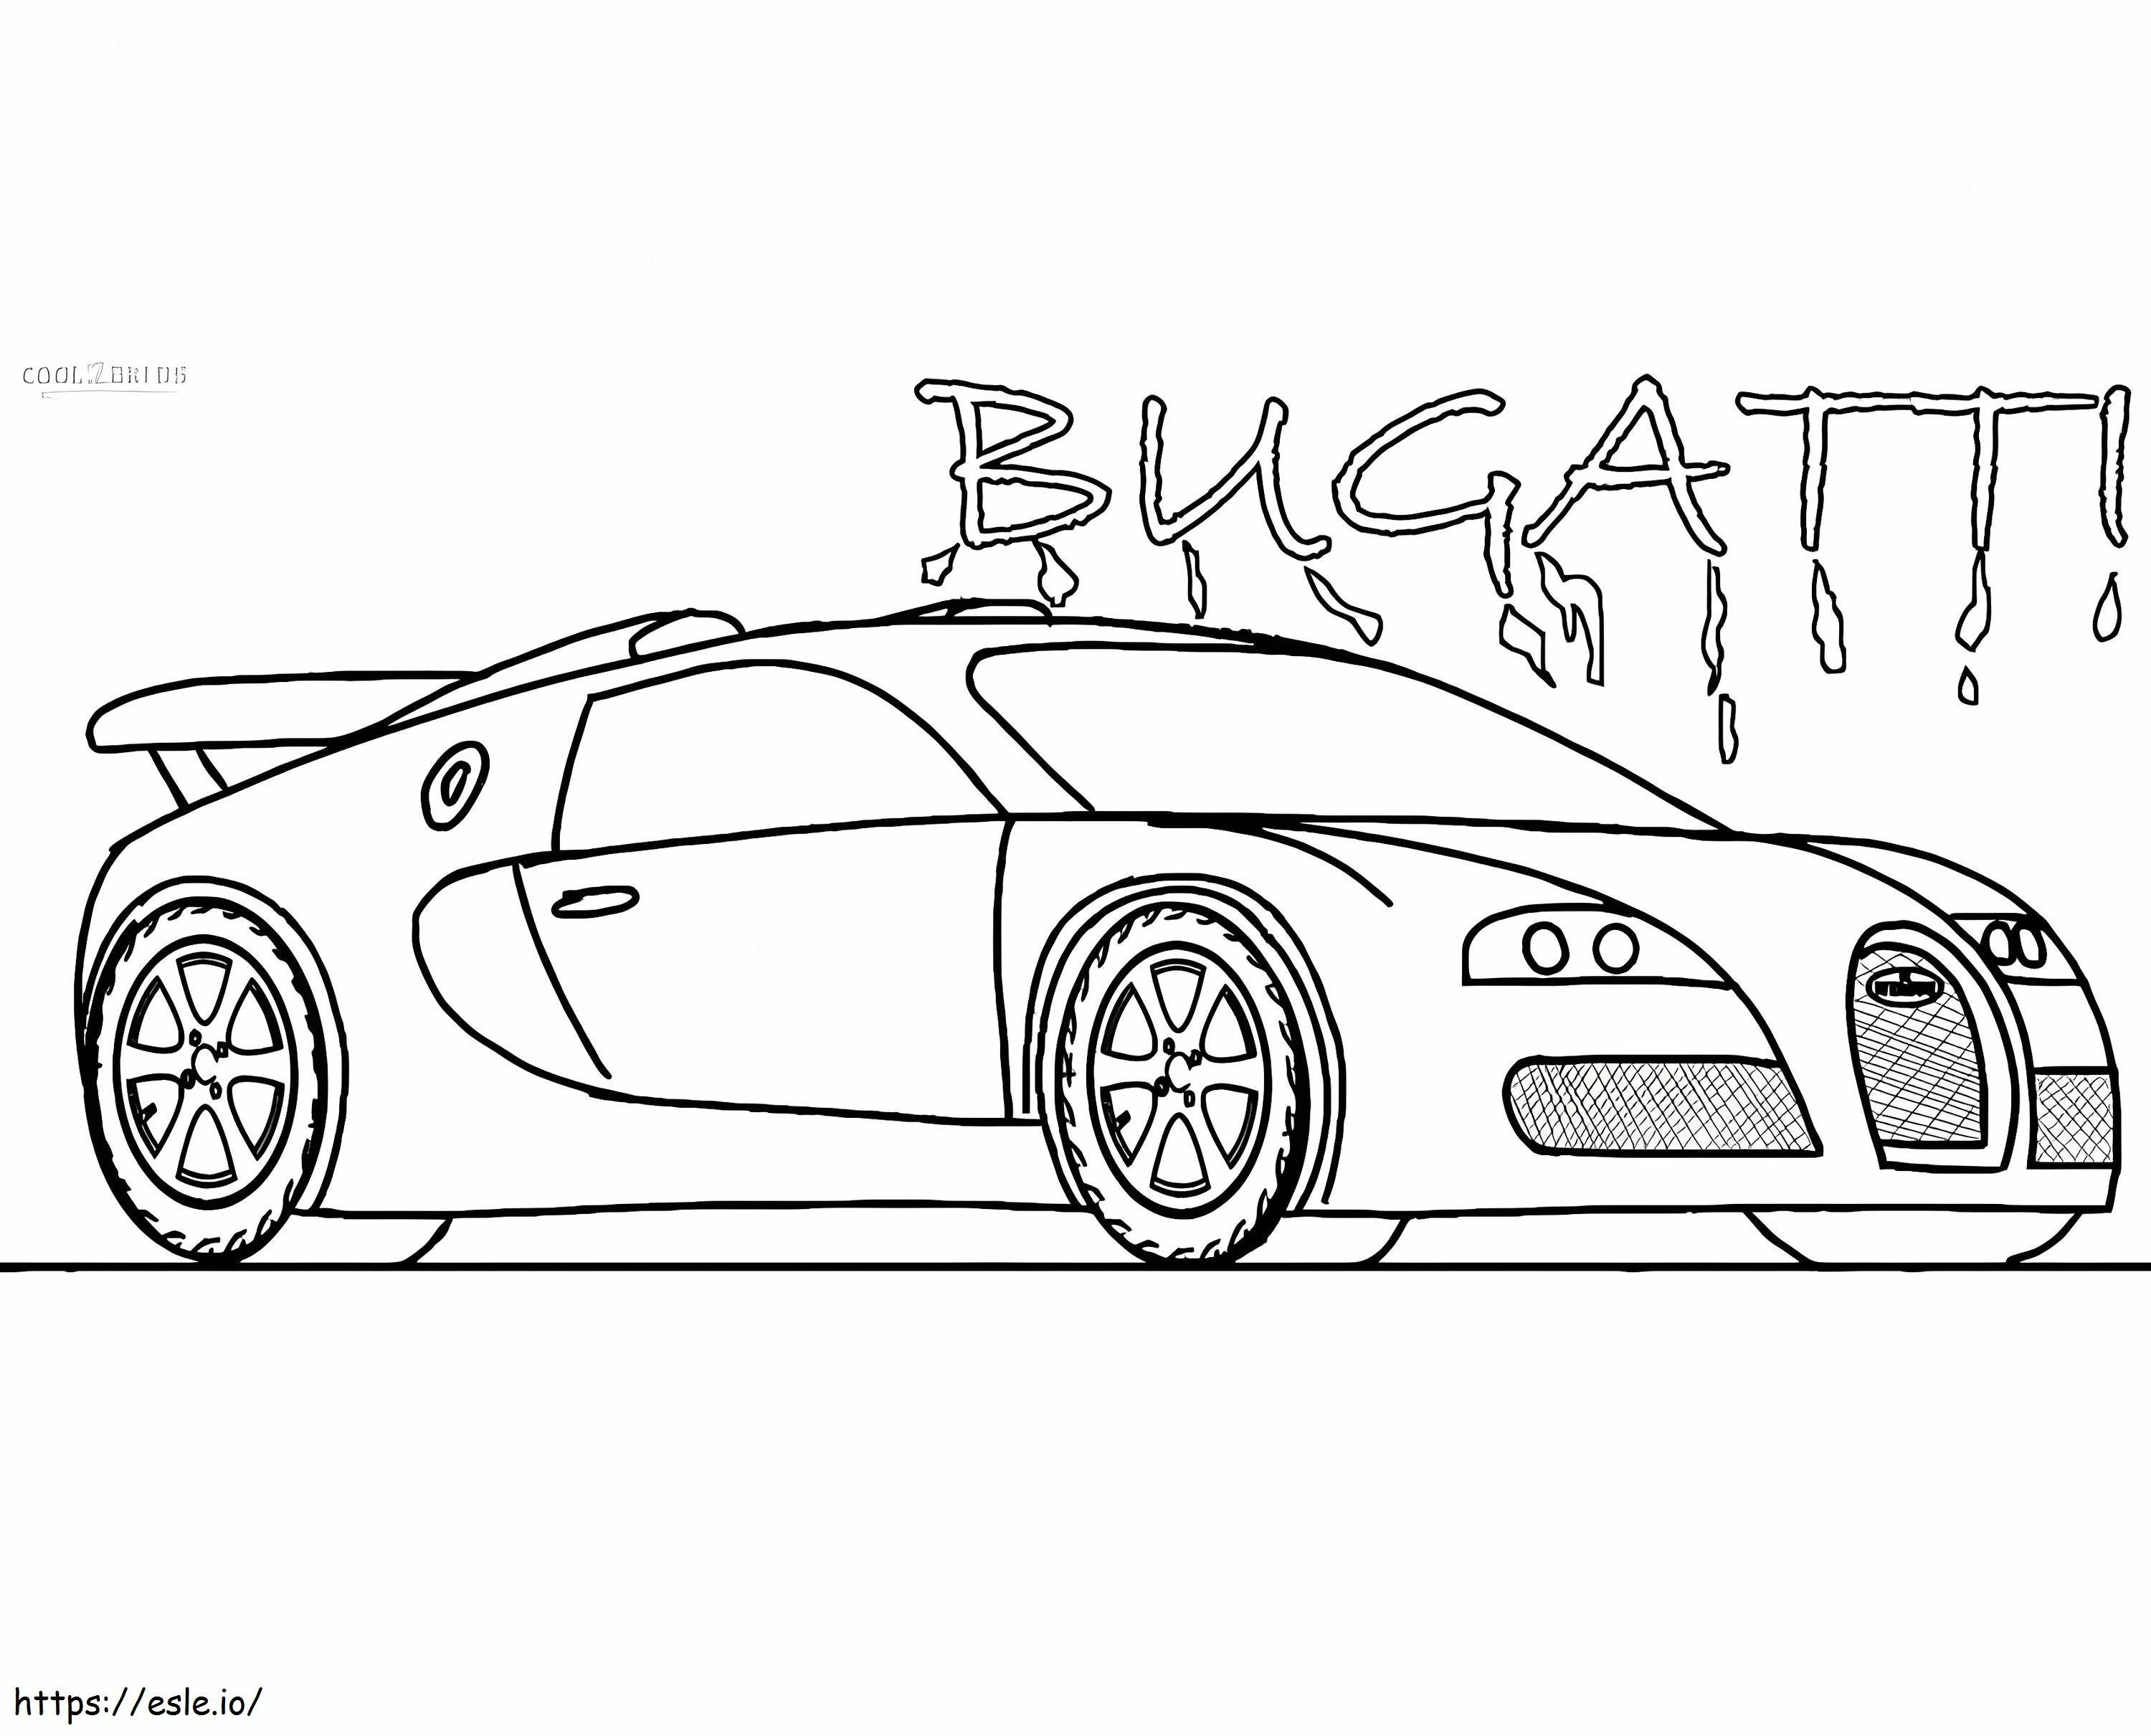 Samochód Bugatti 4 kolorowanka